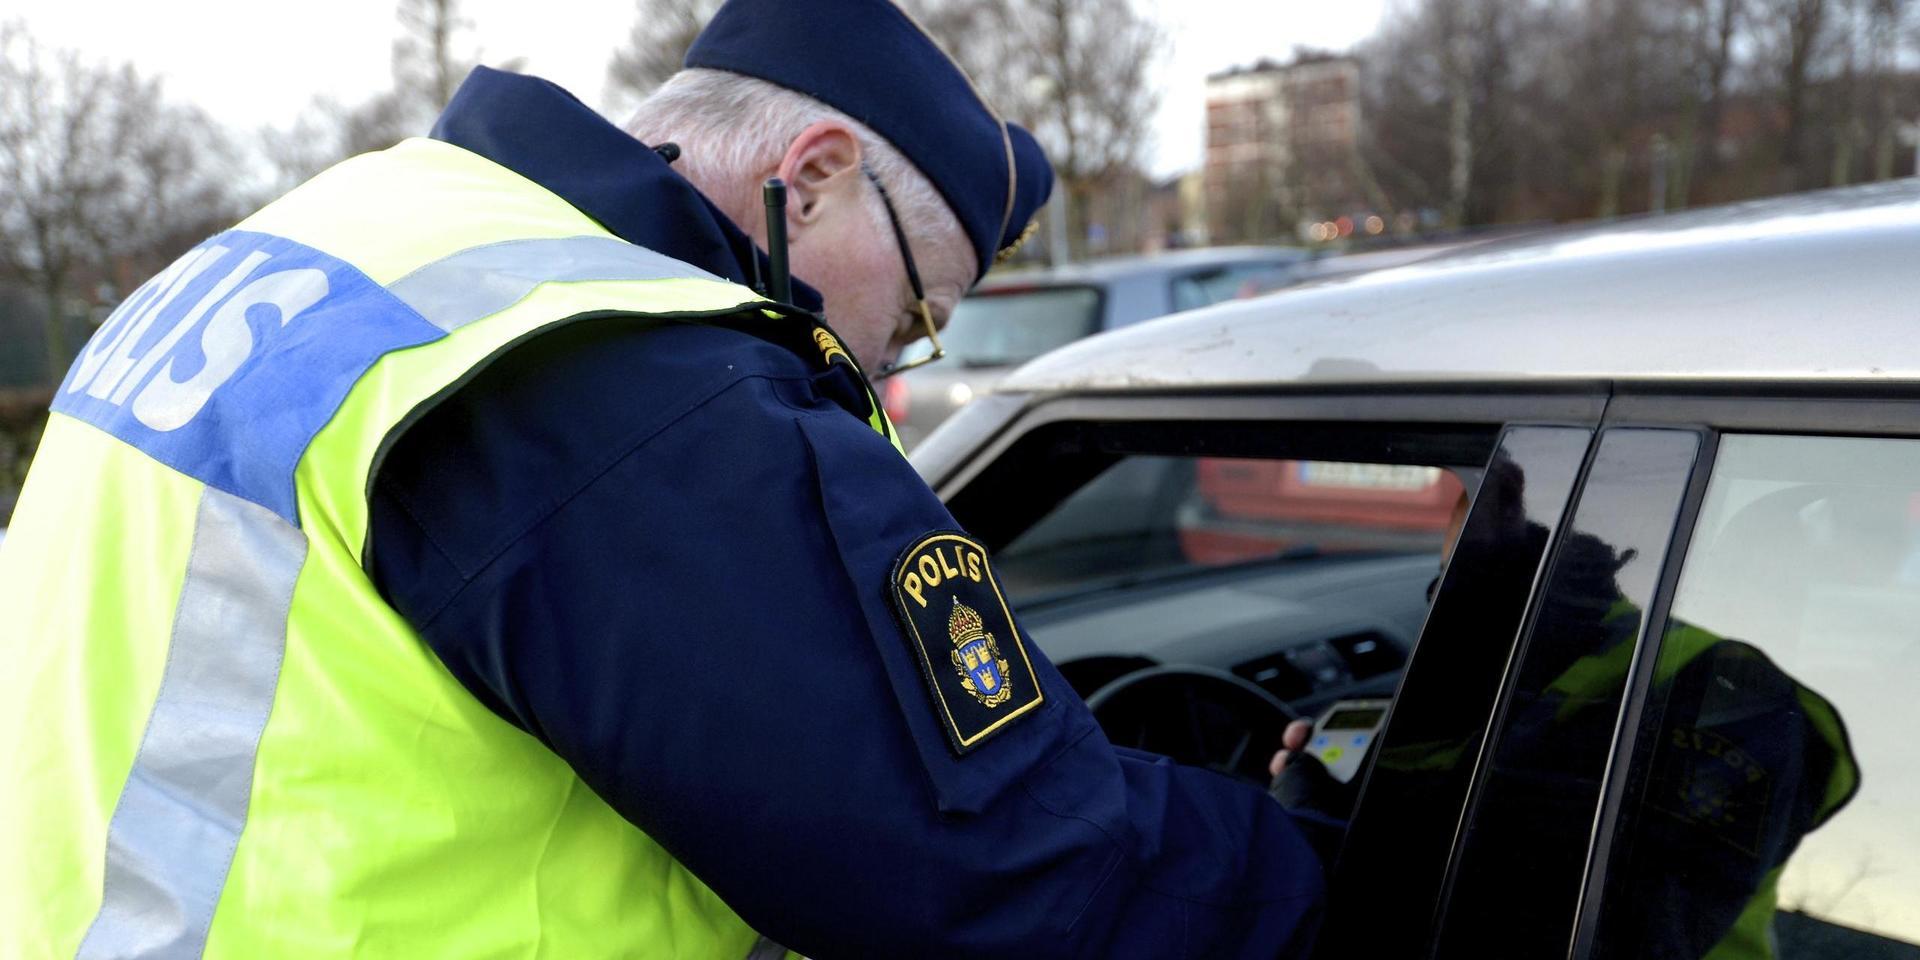 En man i 20-årsåldern stoppades i sin bil av polisen i Mölndal på fredagskvällen. Han misstänks nu för flera brott. OBS: Genrebild. 